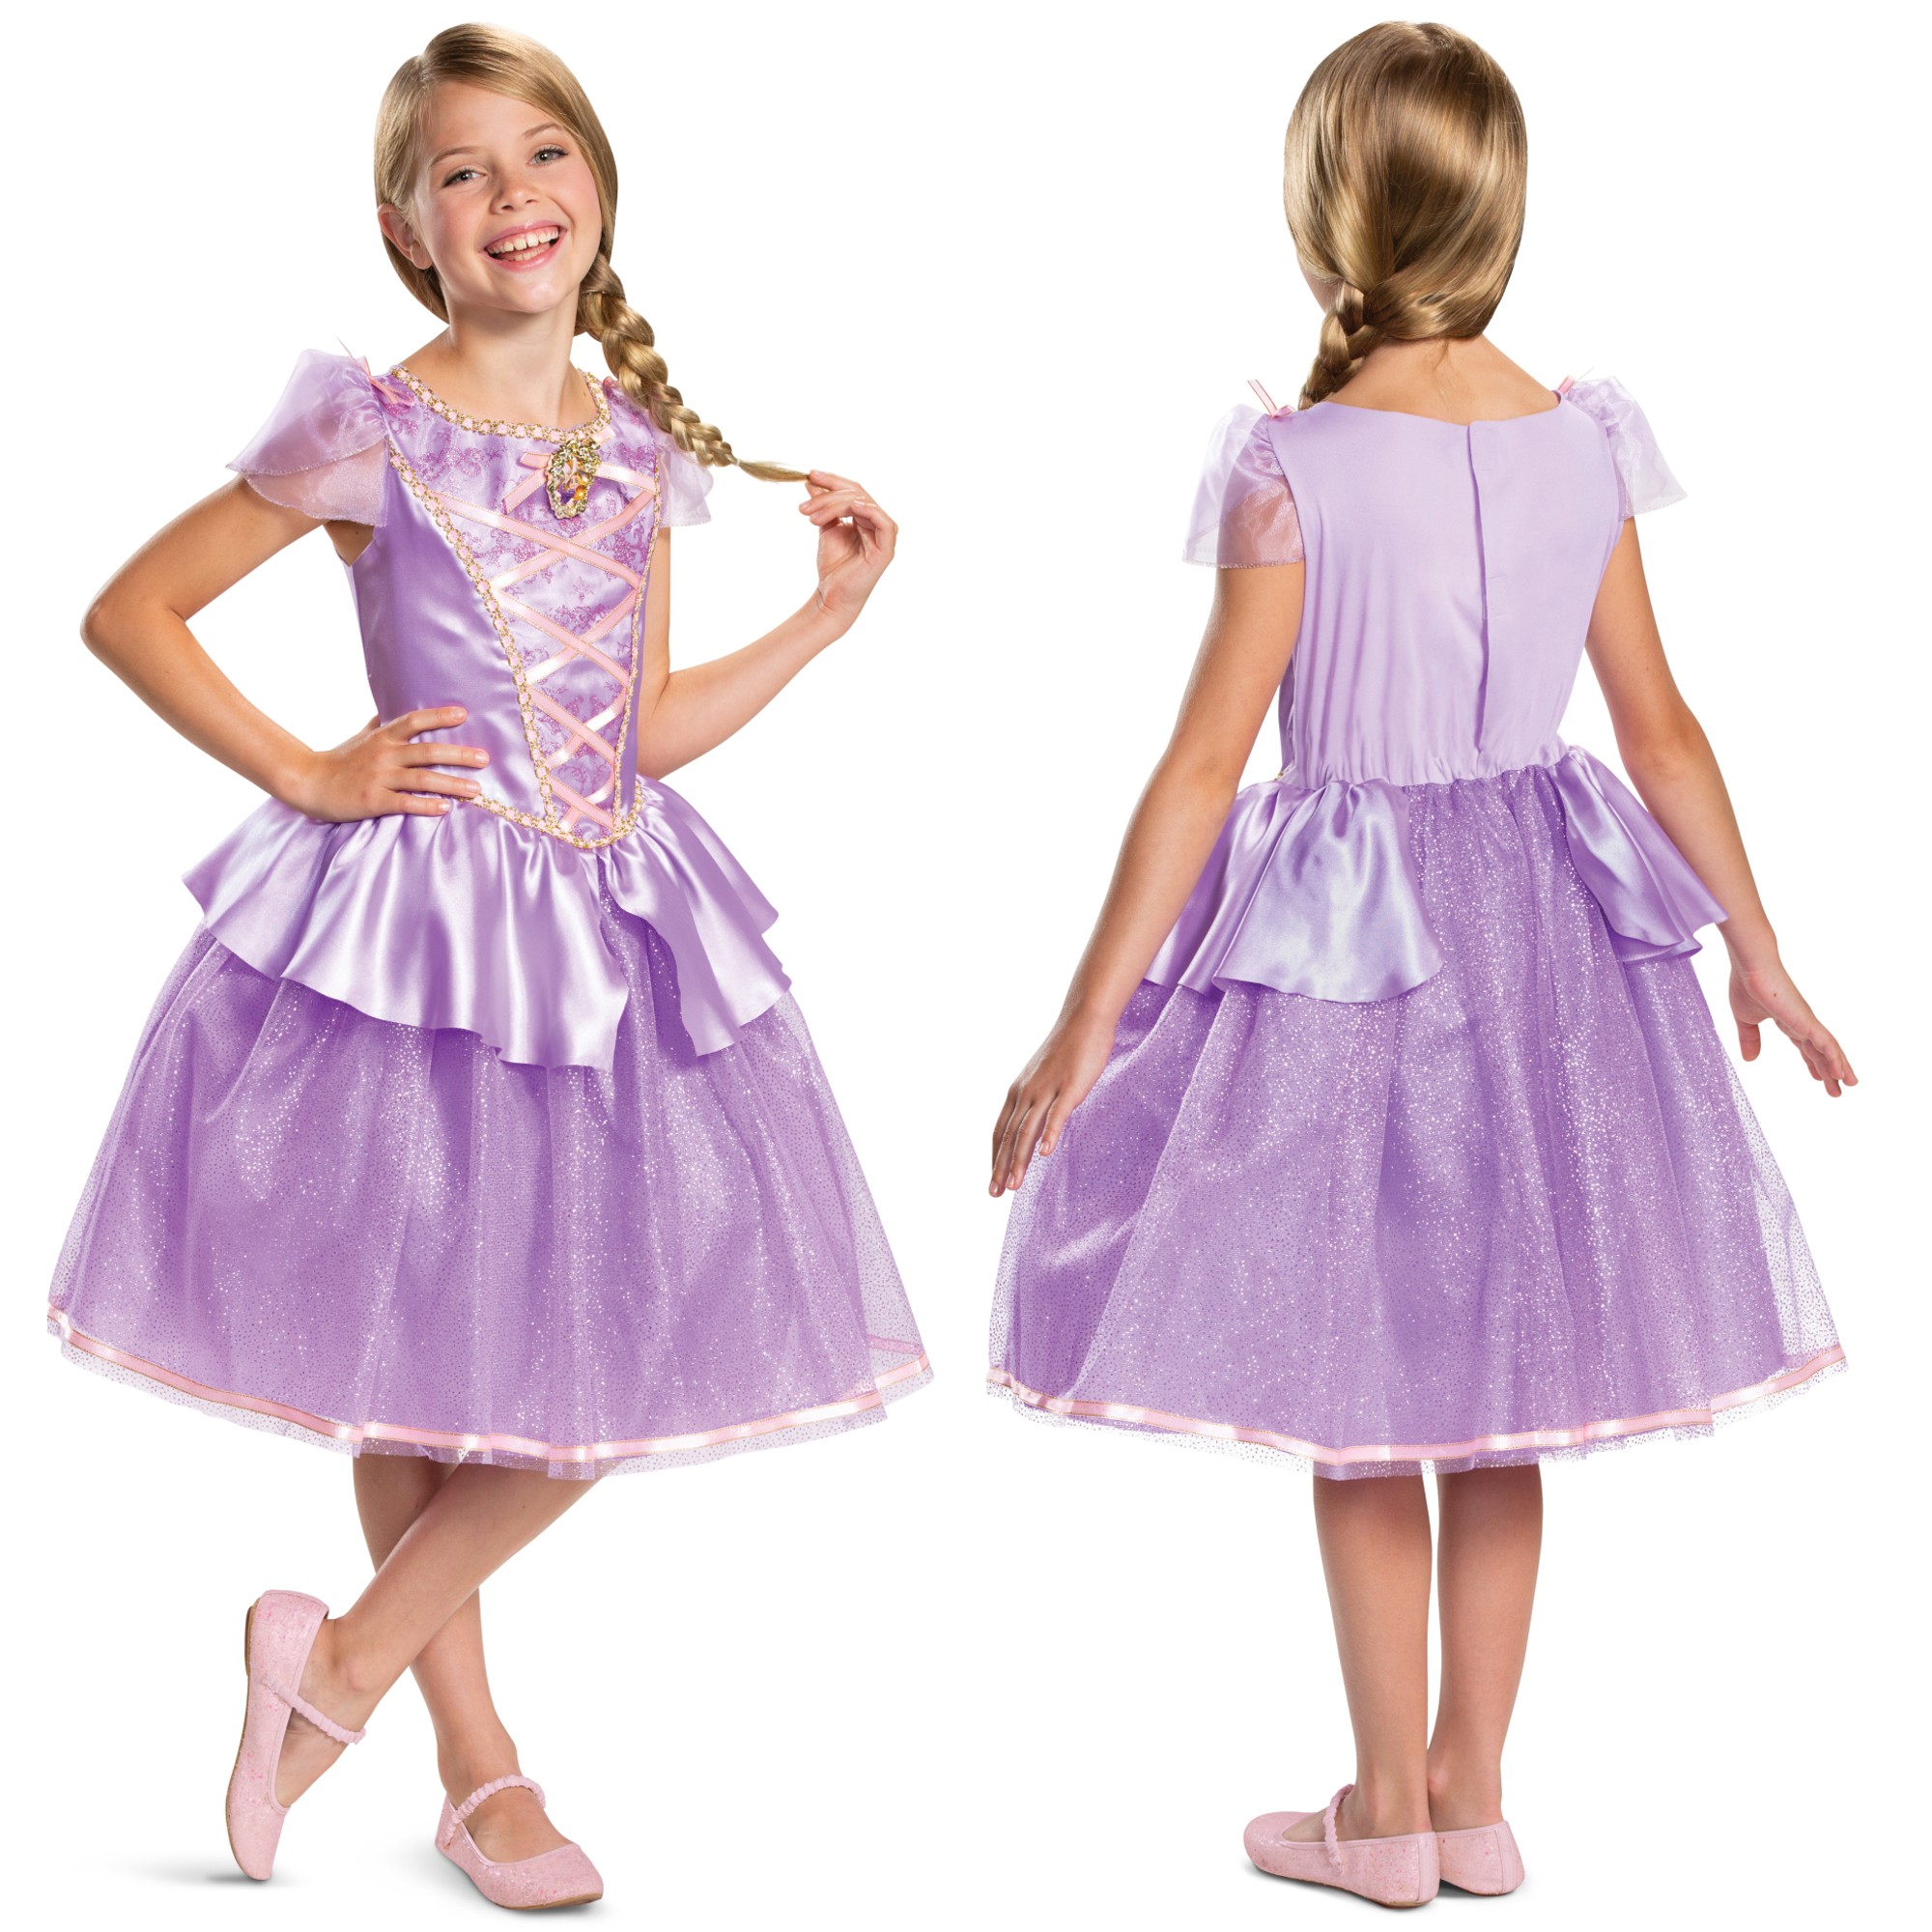 Strj karnawaowy Disney dla dziewczynki Roszpunka kostium przebranie 98-110 cm (3-4 lata)